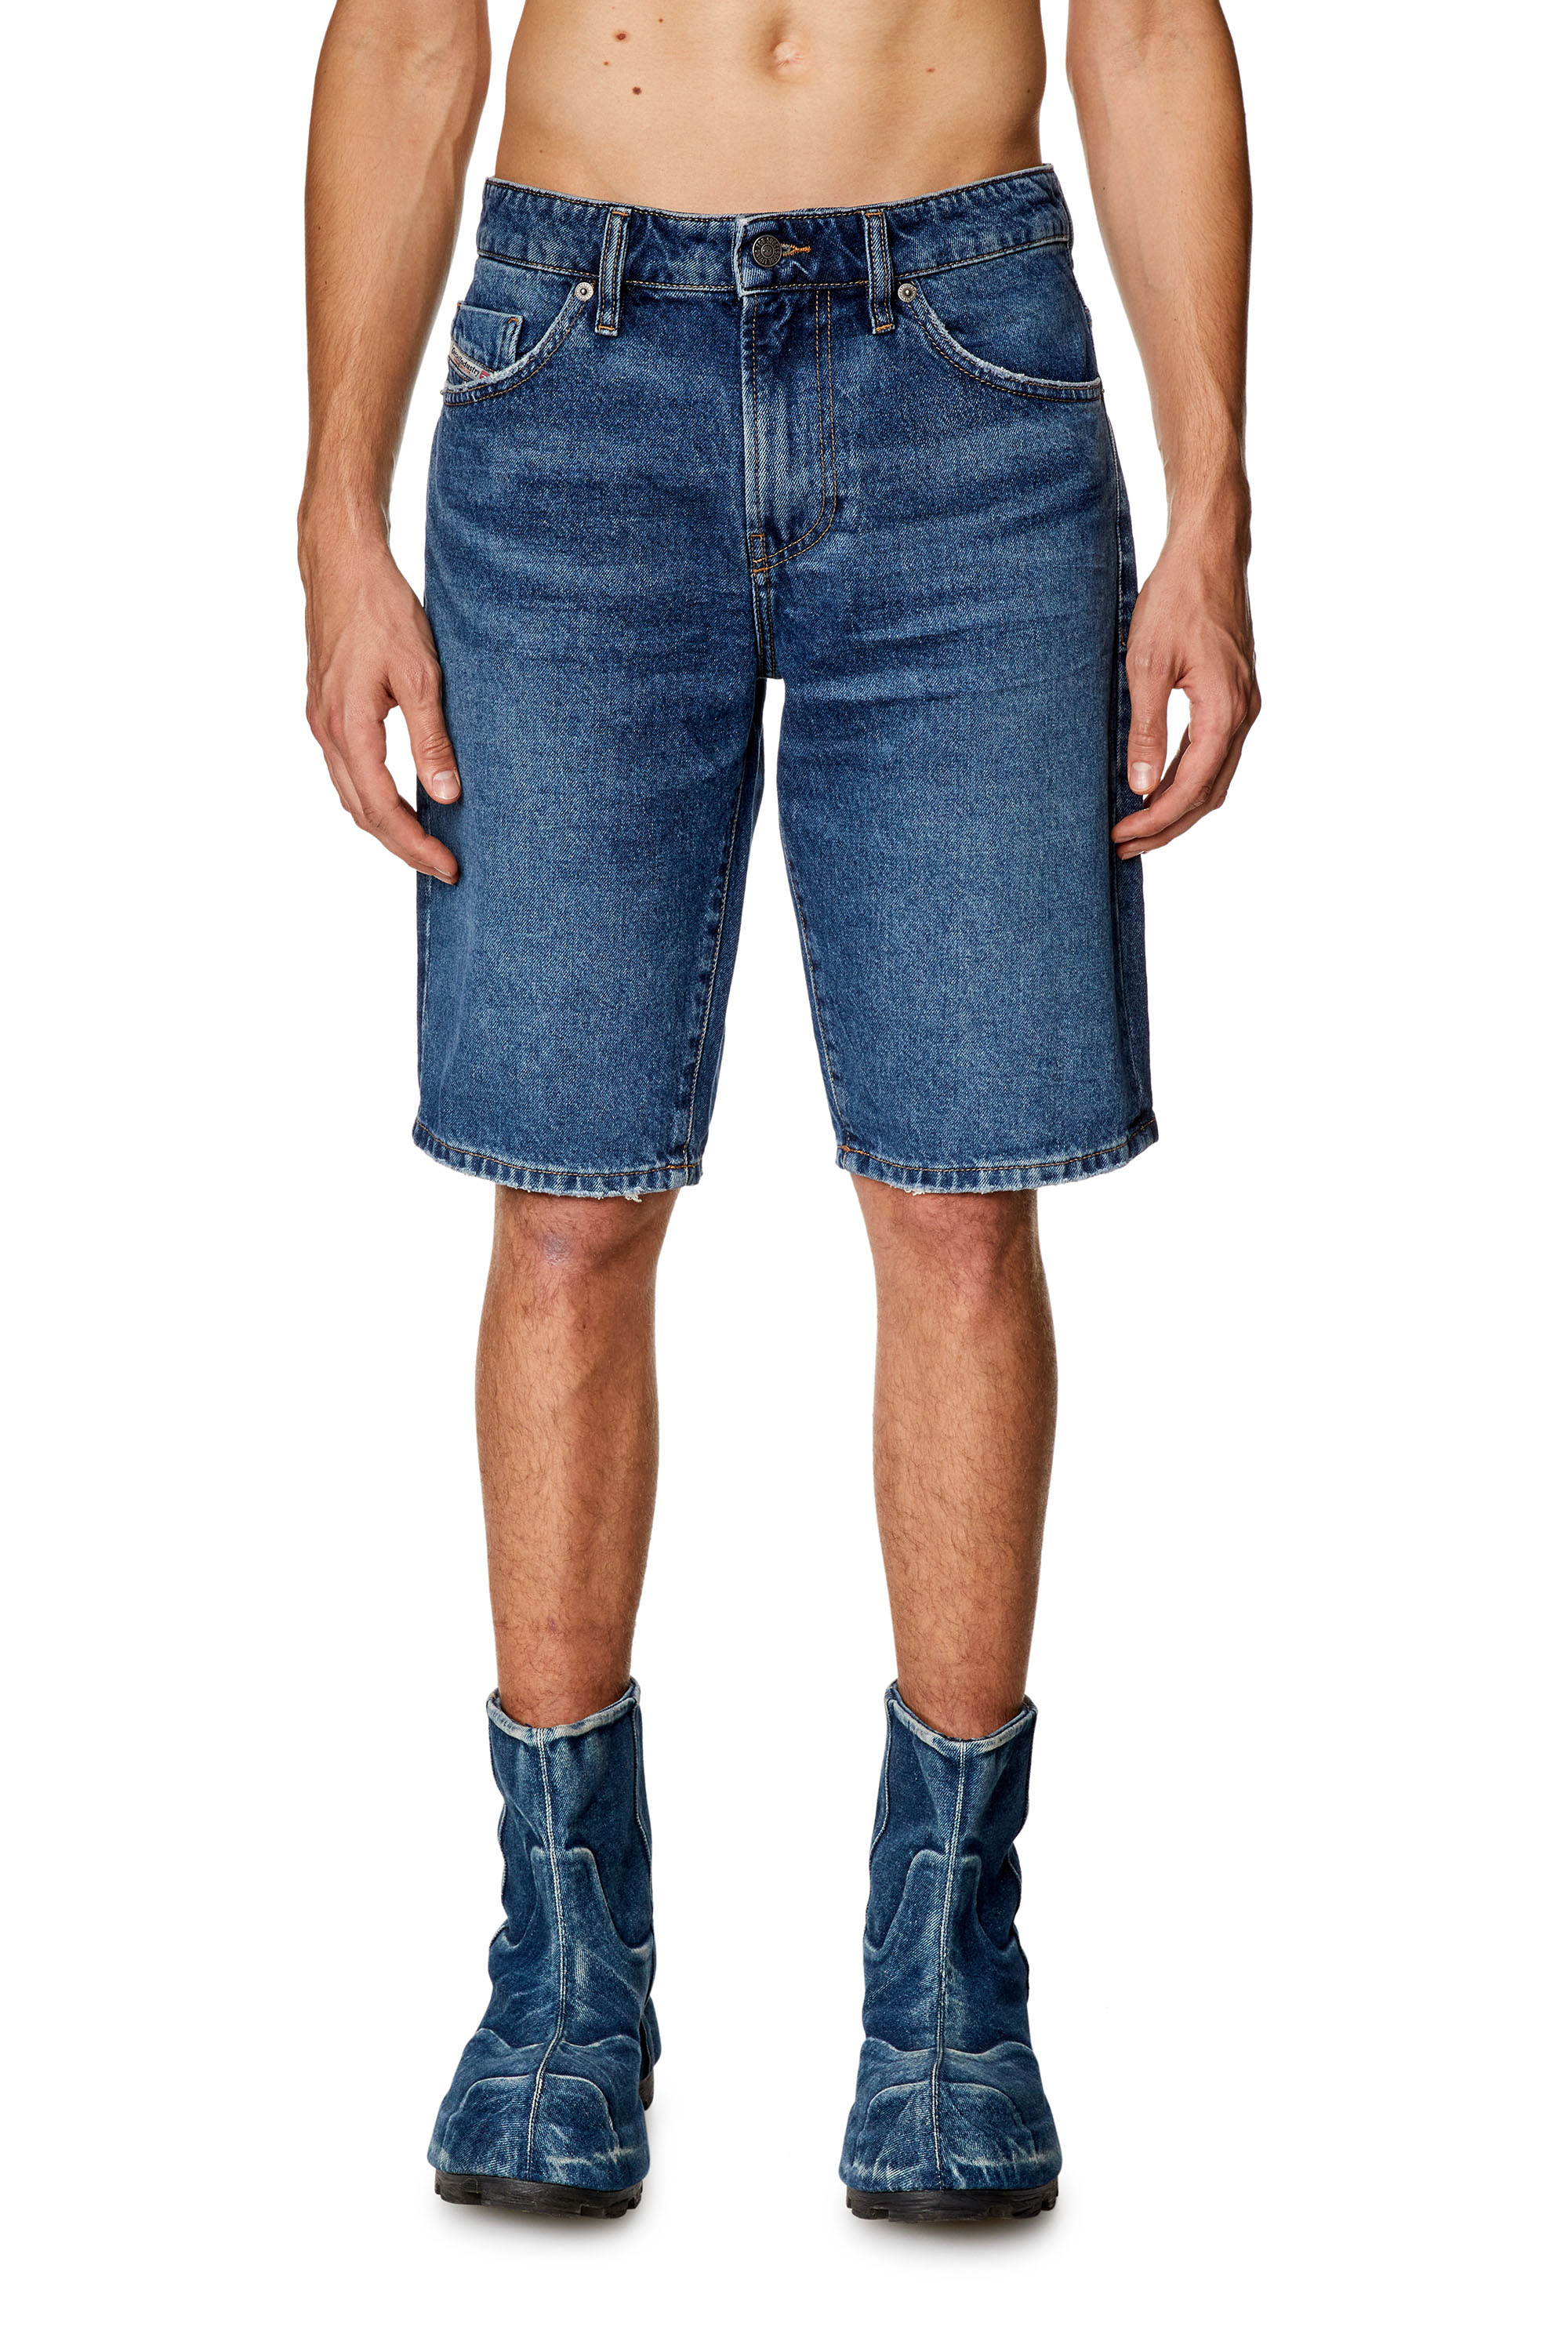 Diesel - Pantalones cortos vaqueros slim - Shorts - Hombre - Azul marino